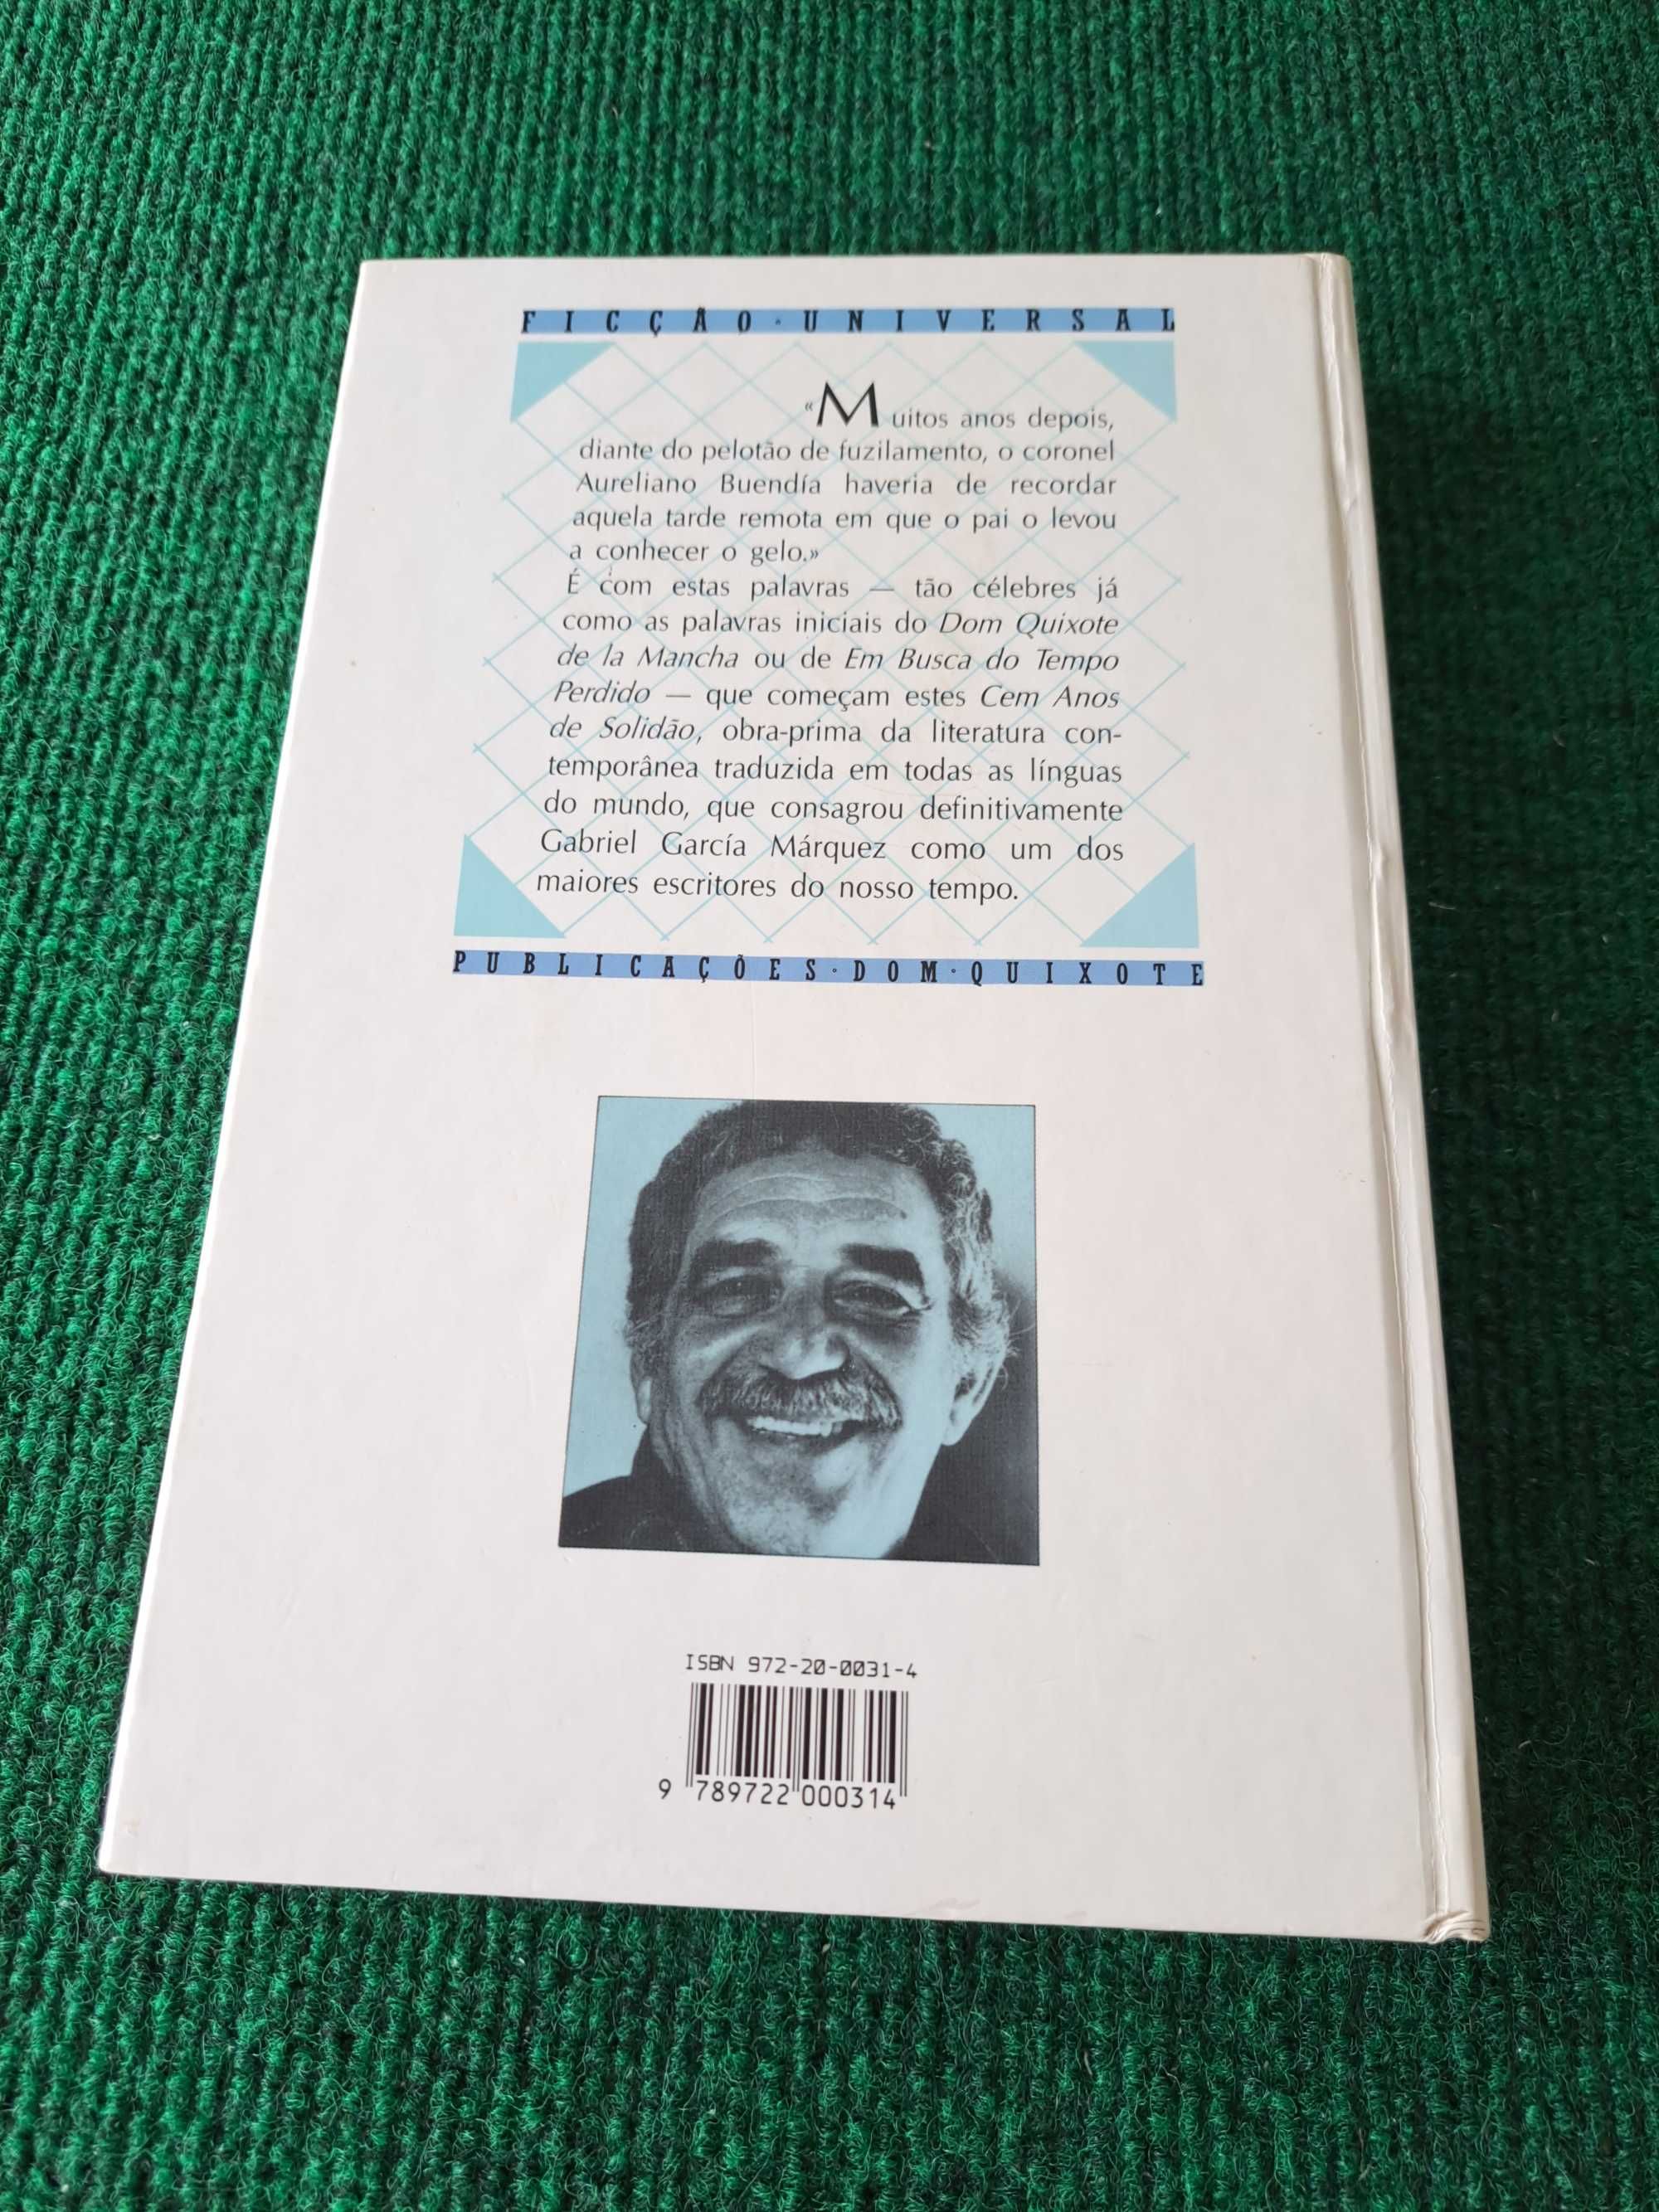 Cem anos de solidão - Gabriel Garcia Marquez